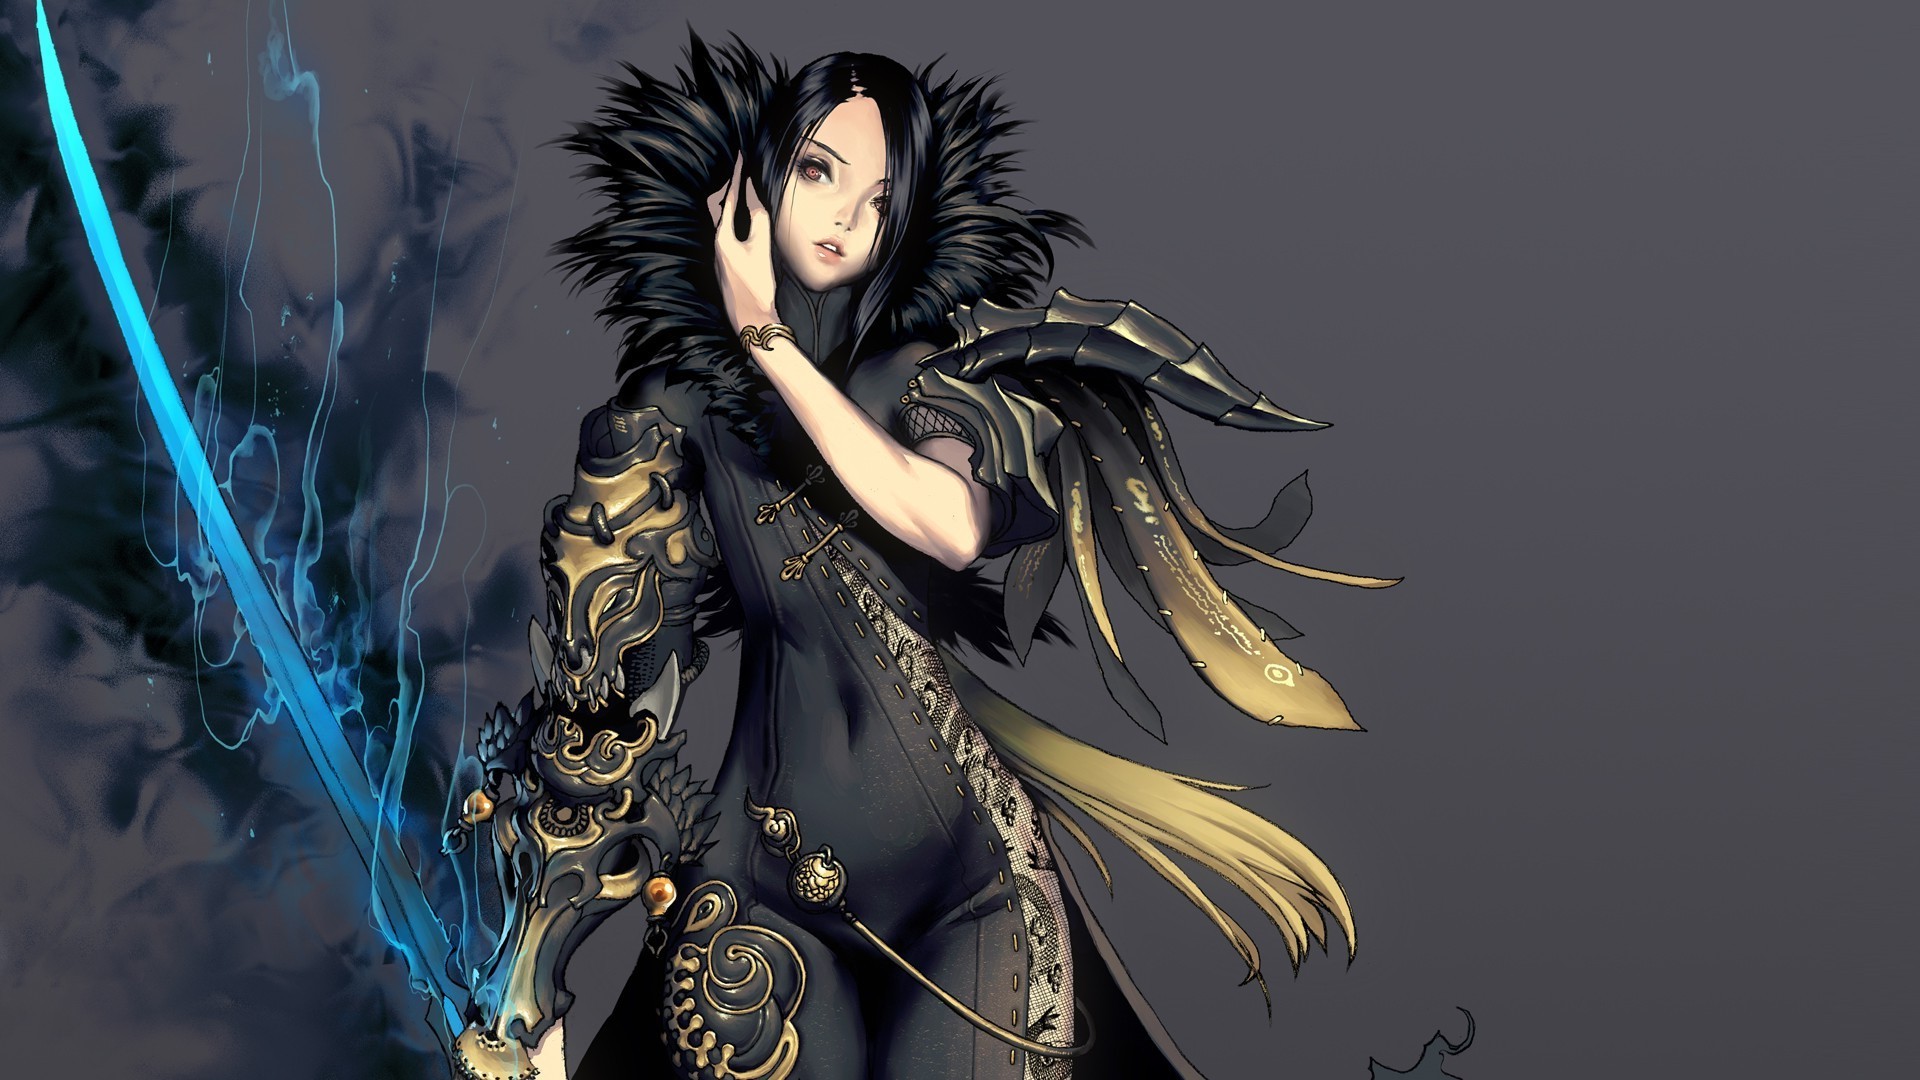 anime sword wallpaper,cg artwork,black hair,fictional character,illustration,anime